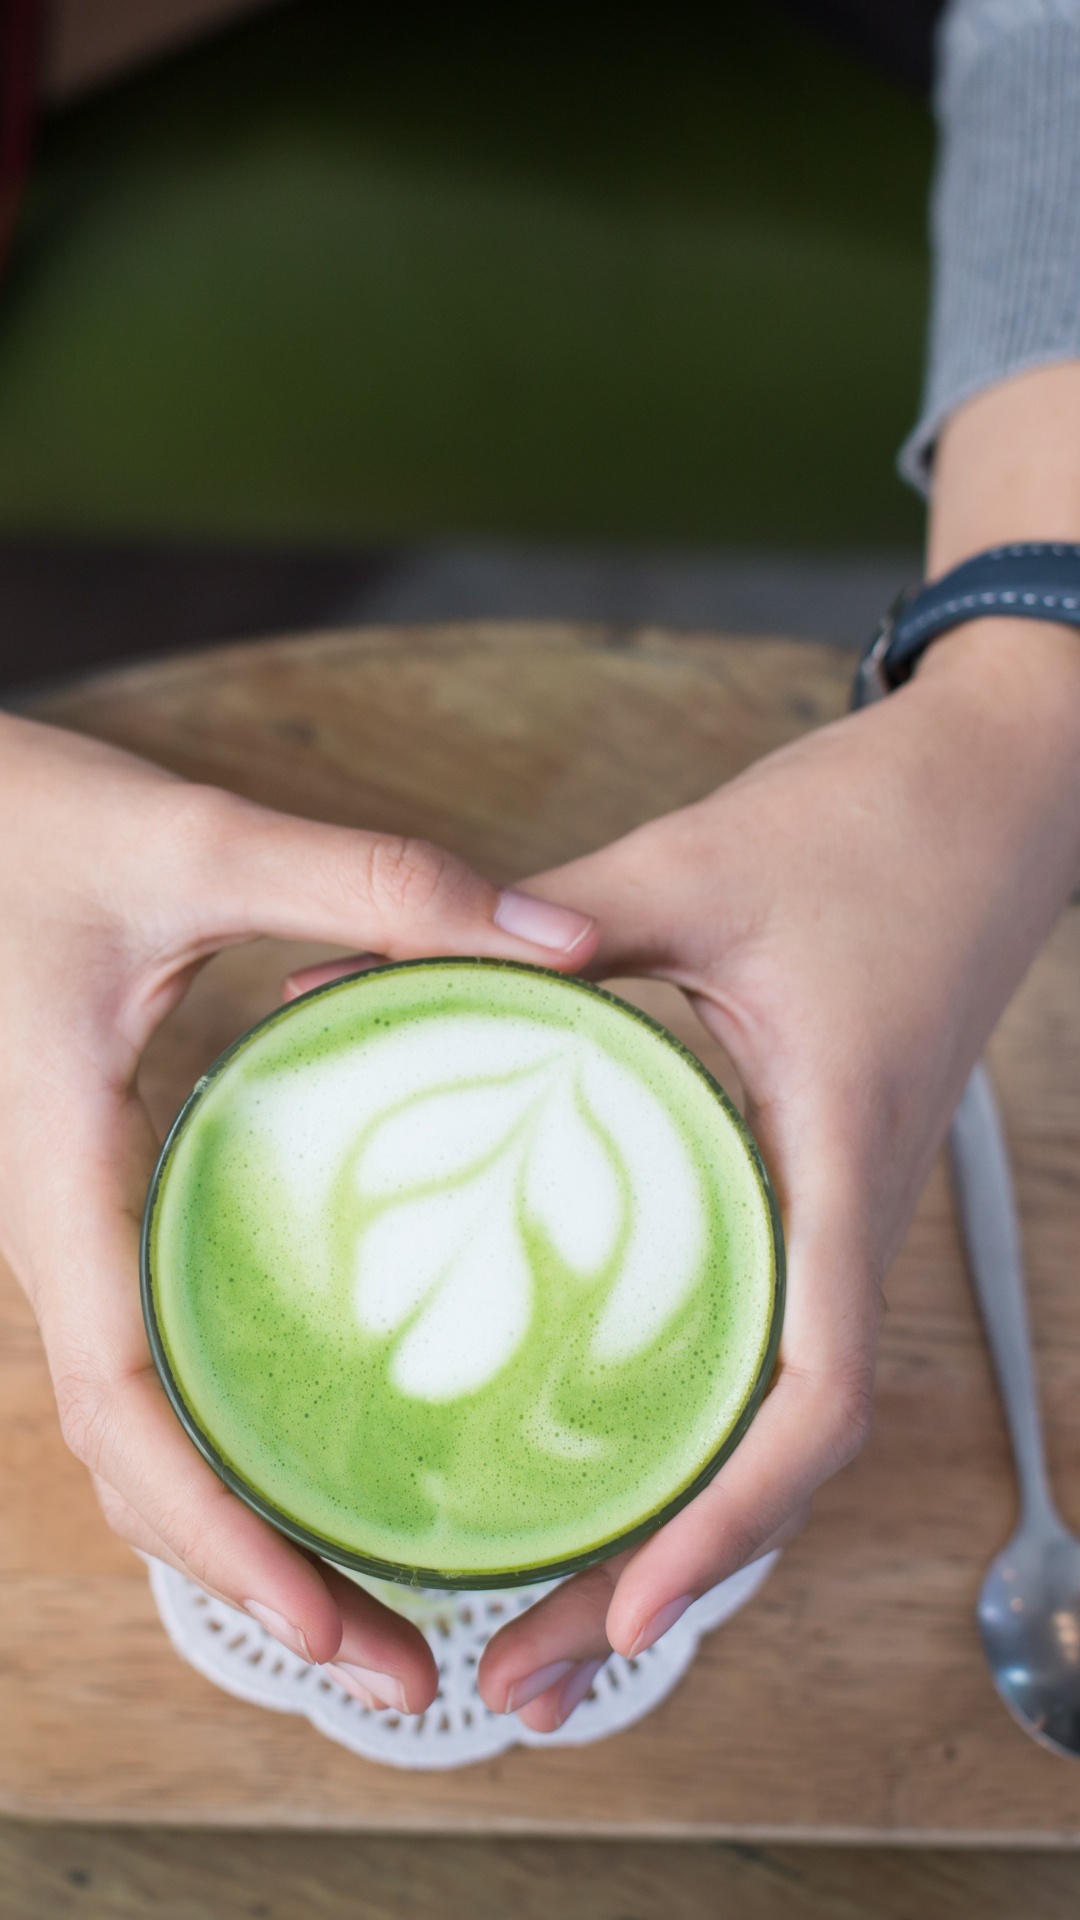 拿铁咖啡, 绿茶, 绿色的, 手, 食品 壁纸 1080x1920 允许